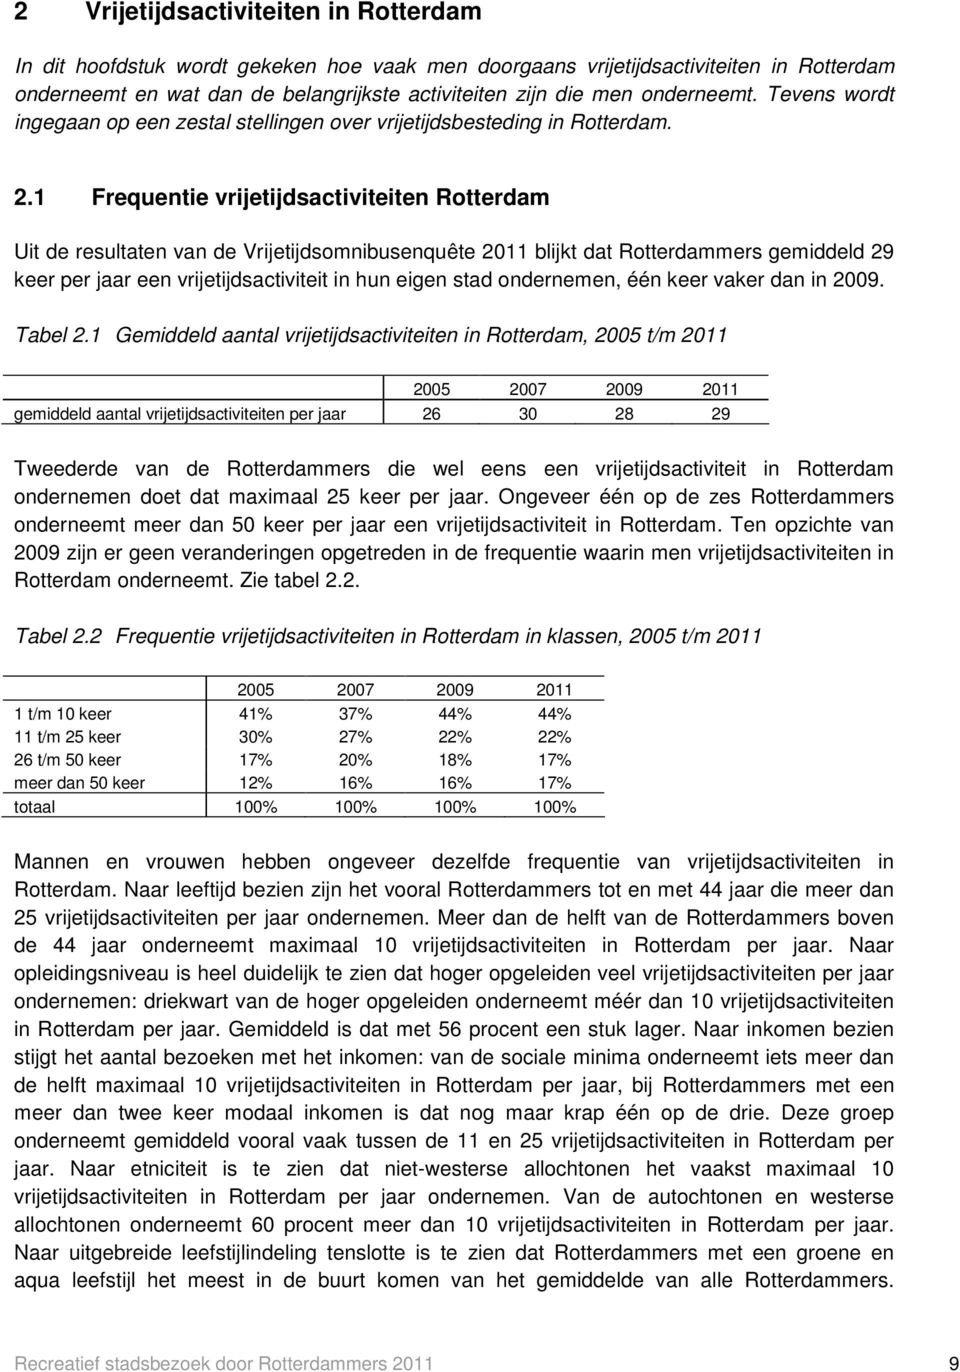 1 Frequentie vrijetijdsactiviteiten Rotterdam Uit de resultaten van de Vrijetijdsomnibusenquête 2011 blijkt dat Rotterdammers gemiddeld 29 keer per jaar een vrijetijdsactiviteit in hun eigen stad